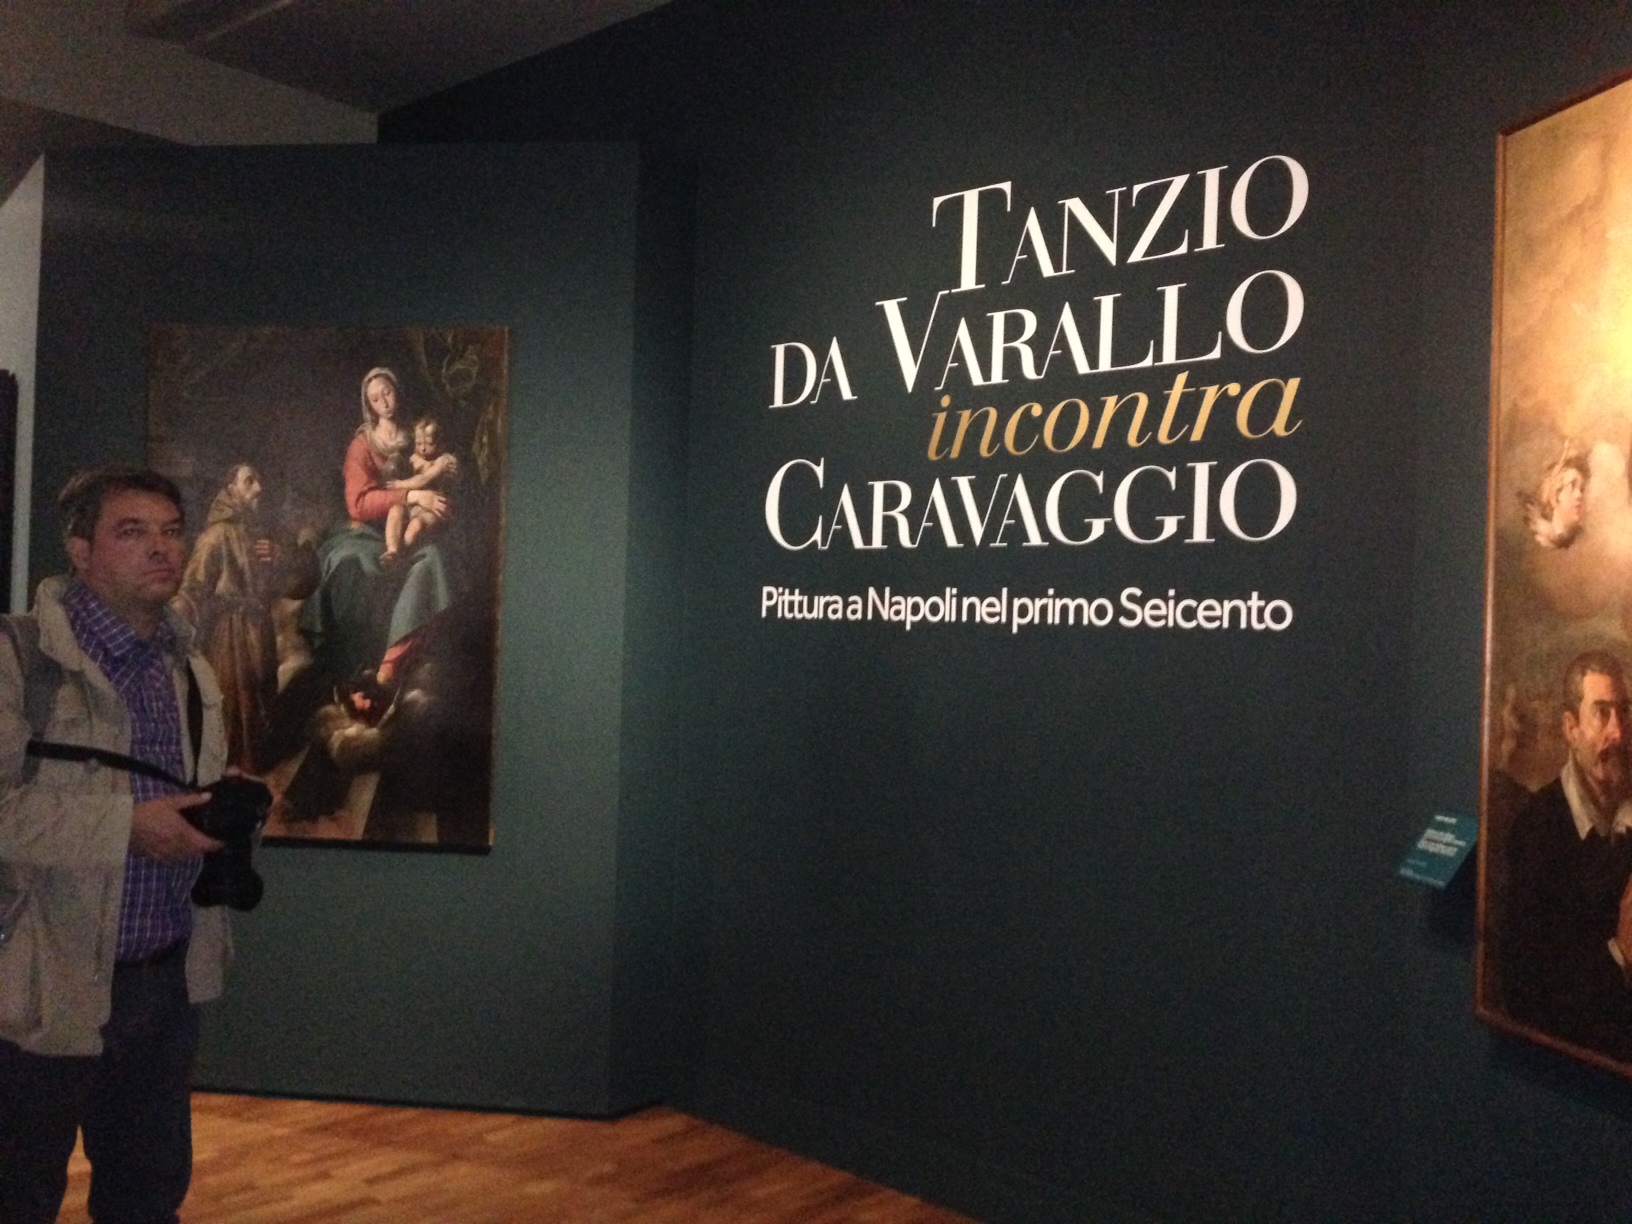 Tanzio da Varallo incontra Caravaggio, Napoli, Palazzo Zevallos  (foto Diana Gianquitto)